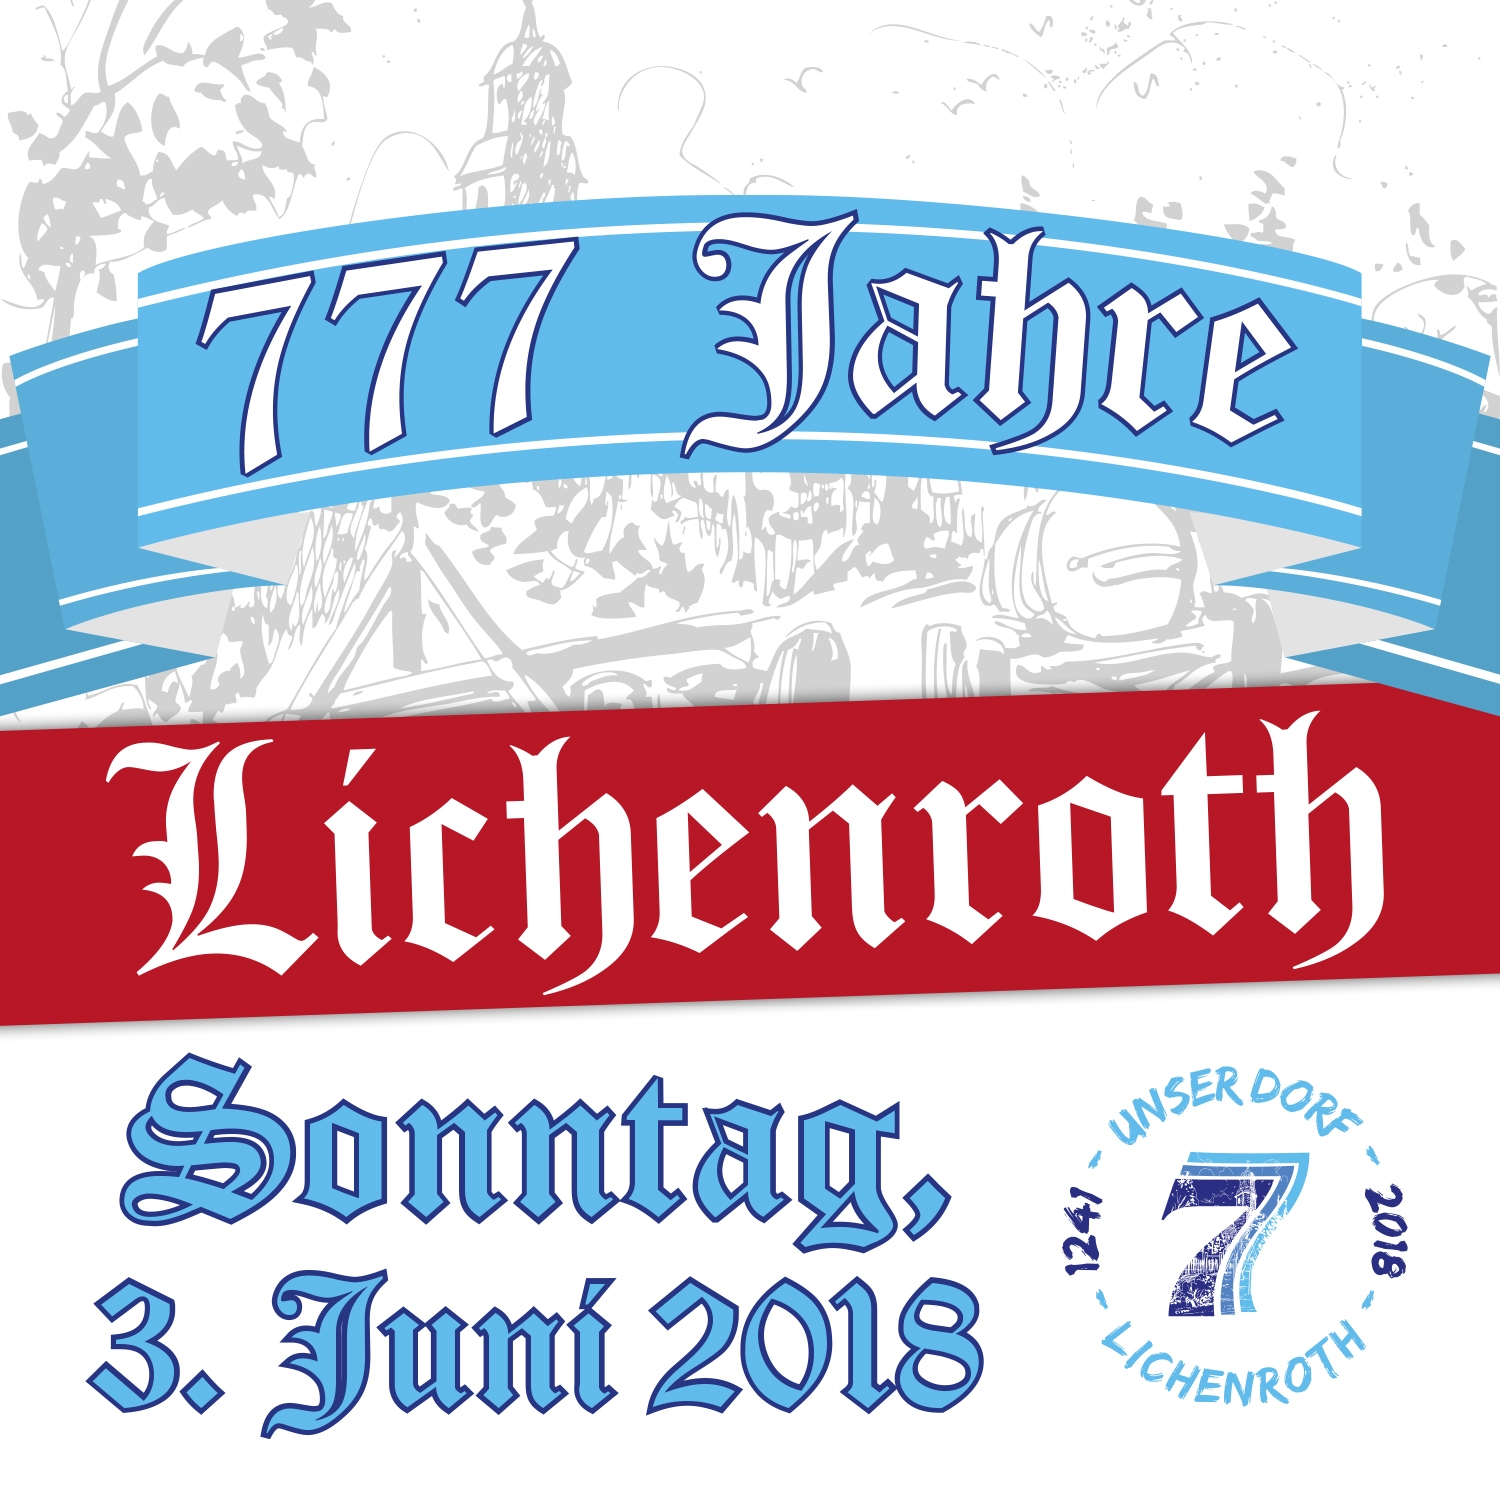 Dorfjubilum 777 Jahre Lichenroth